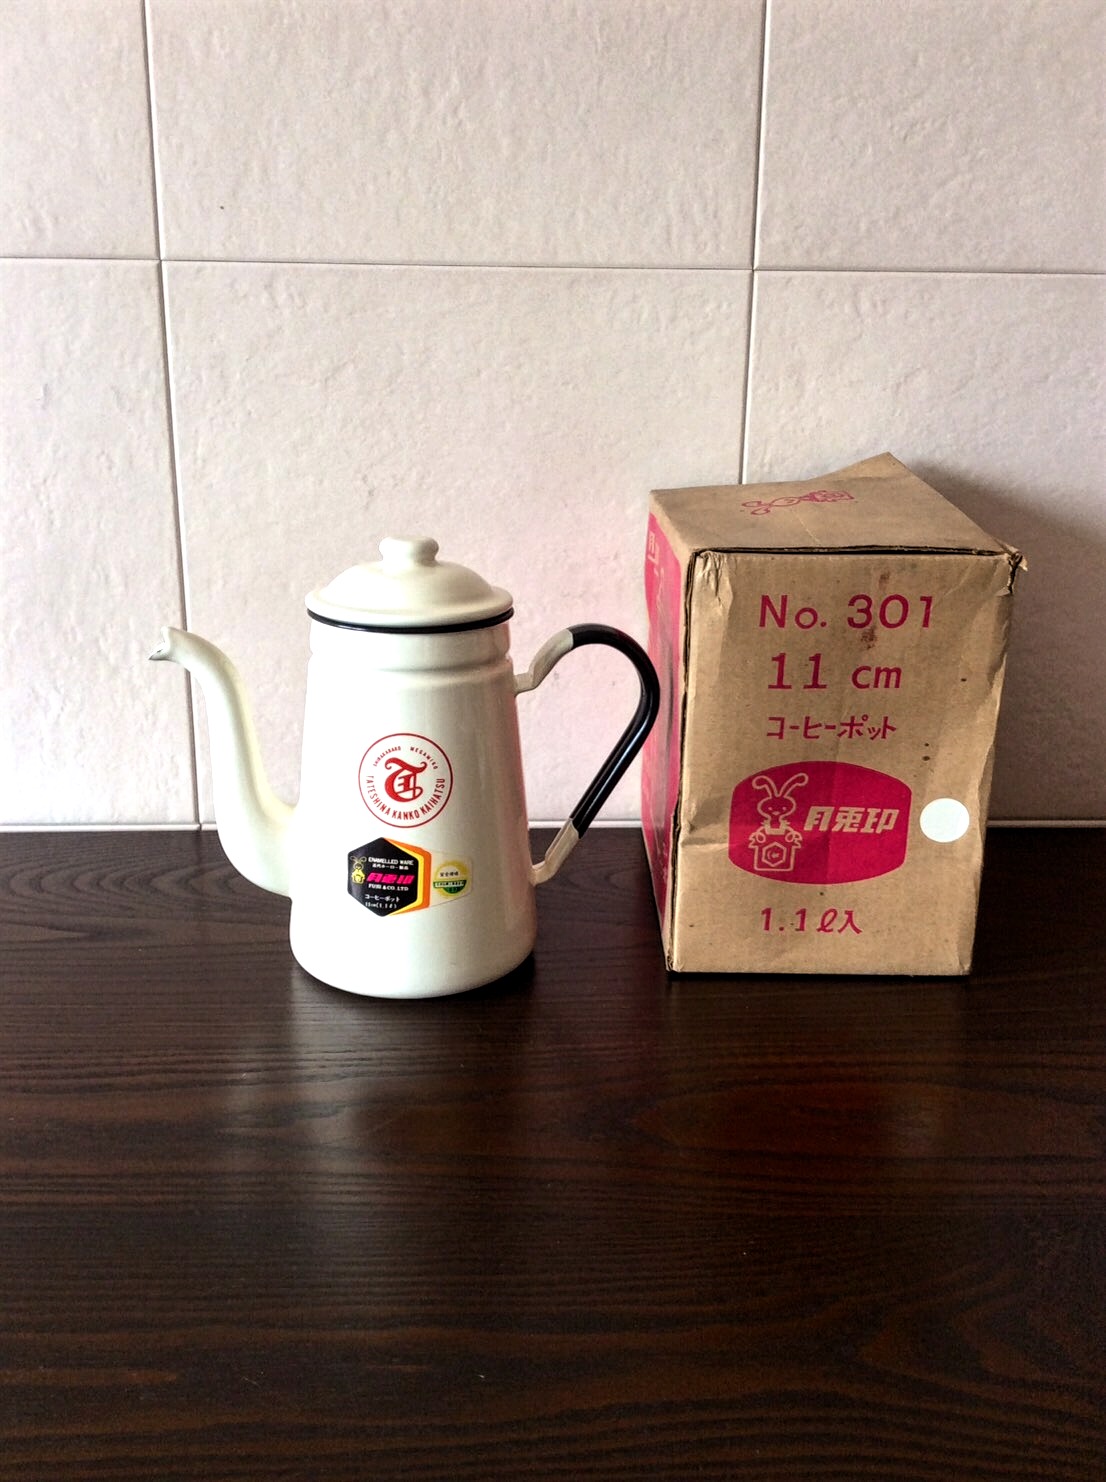 月兎印 コーヒーポットのご紹介。こちらは藤井商店のものなので昭和ではなく、大正レトロかも？